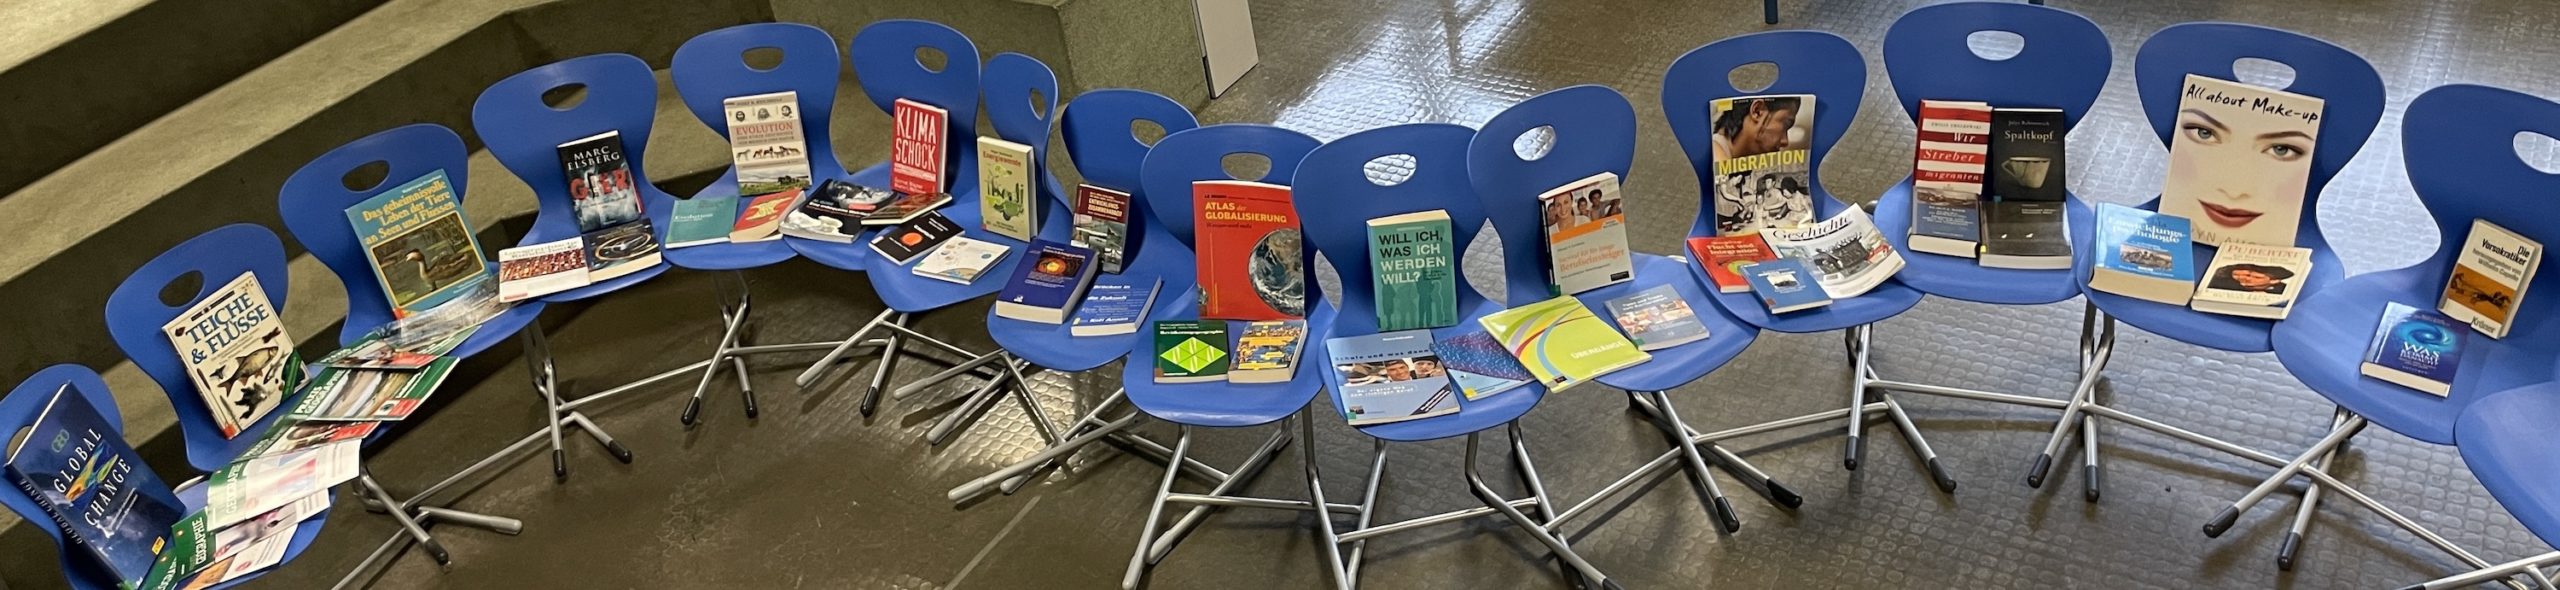 Das Foto zeigt Bücher zum Thema Veränderung auf einem Fluss aus blauen Stühlen.